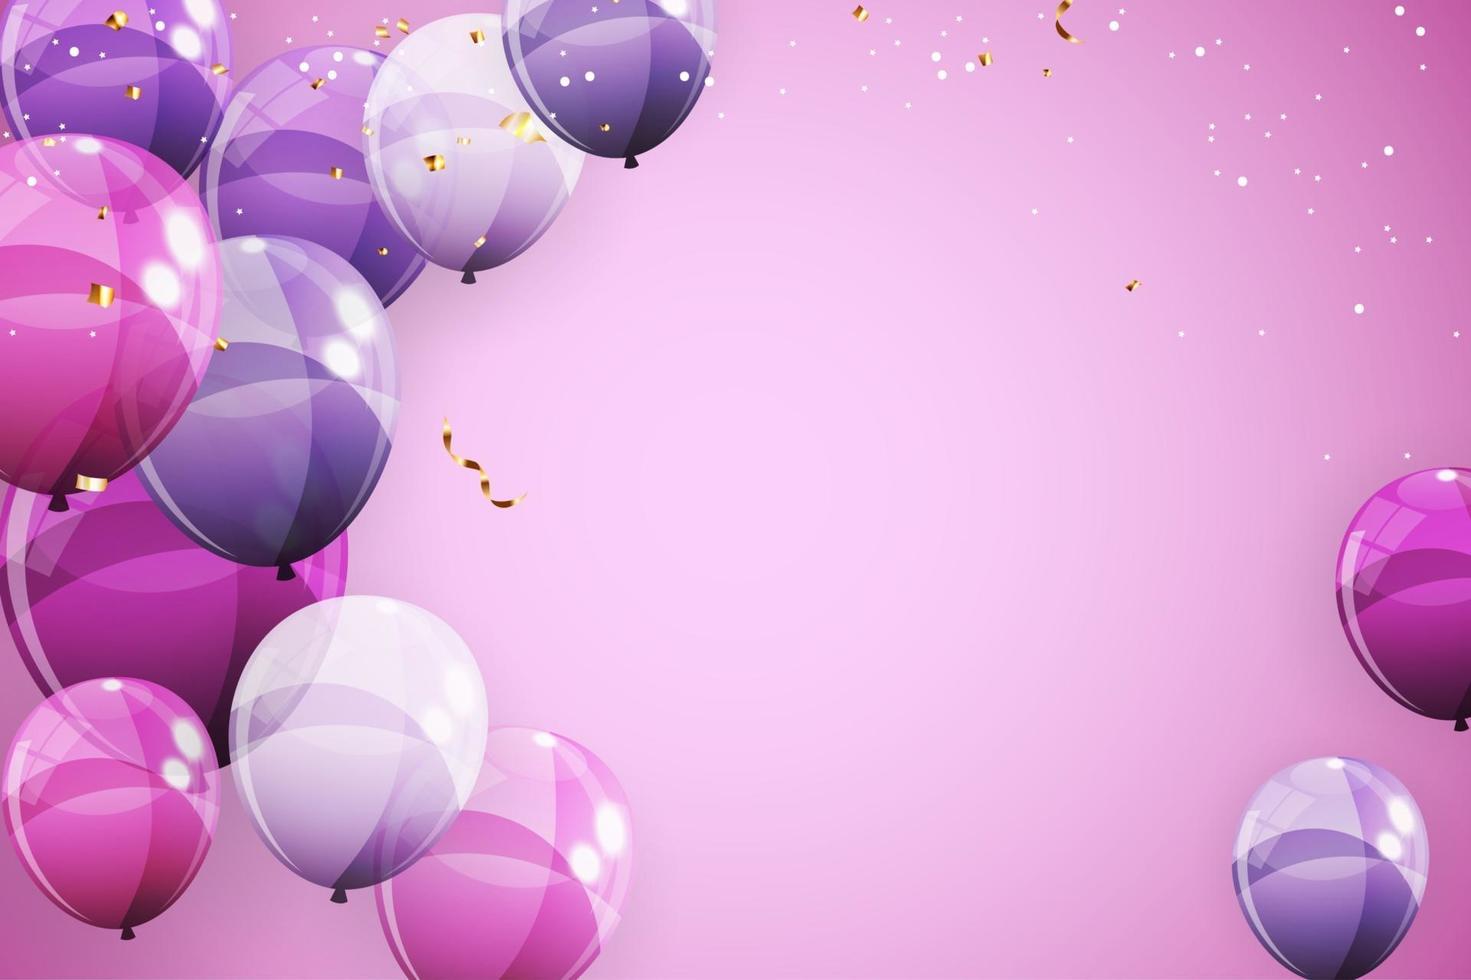 abstrakter Feiertagshintergrund mit Luftballons für Werbeförderung und Geburtstagskarte oder Einladung vektor